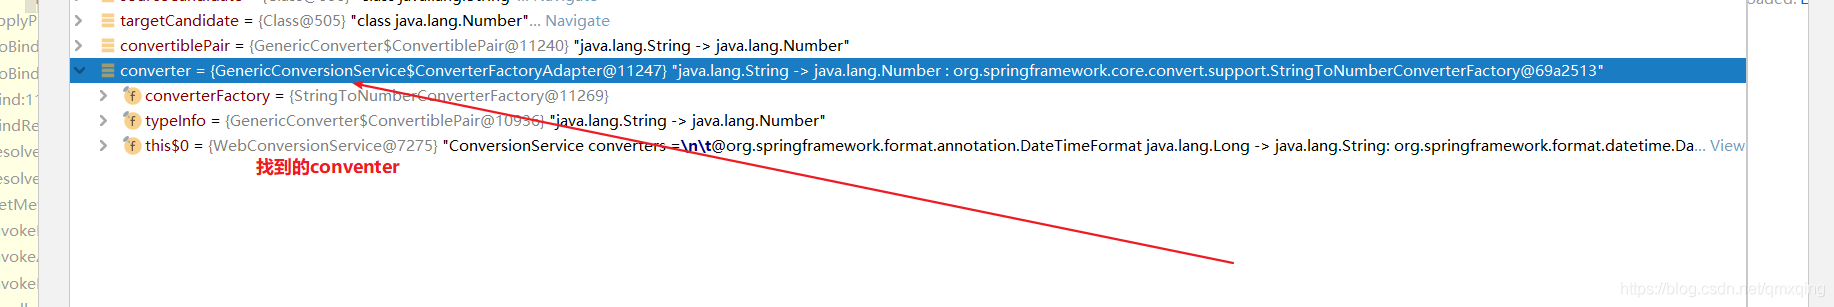 SpringBoot与SpringMVC中参数传递的示例分析